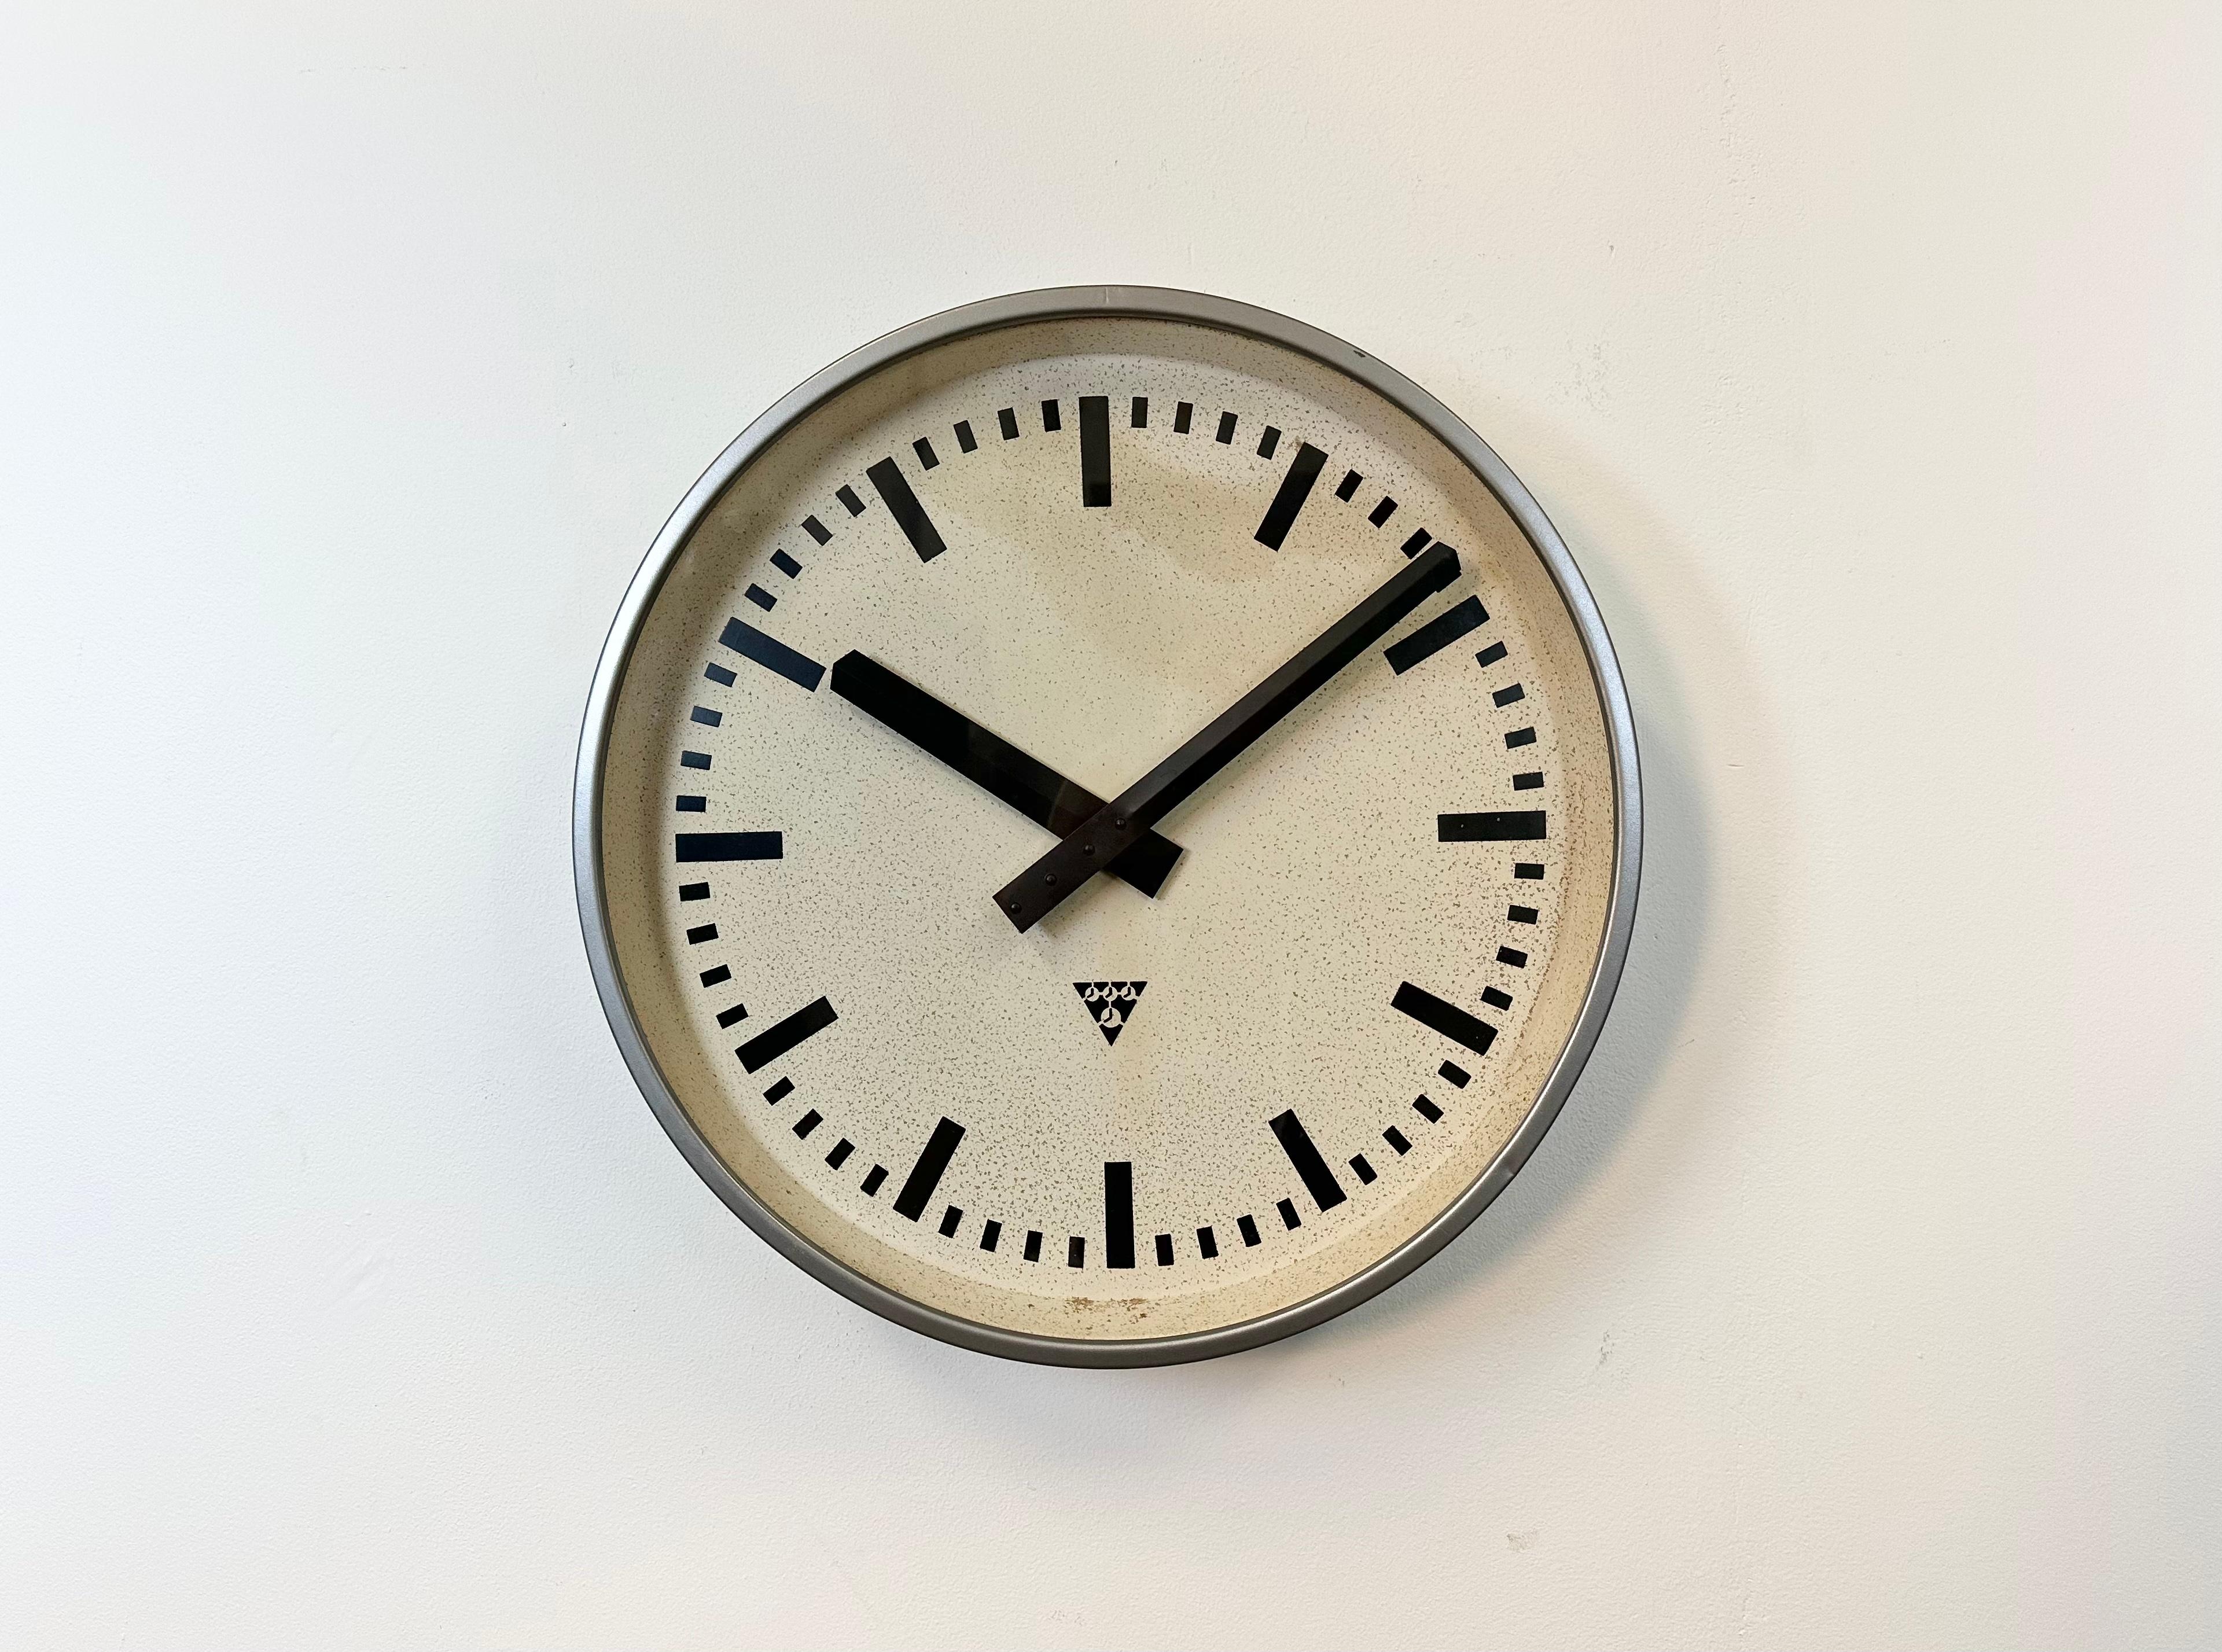 Pragotron-Wanduhr, hergestellt in der ehemaligen Tschechoslowakei in den 1960er Jahren. Sie hat einen grauen Metallrahmen, ein Metallzifferblatt und eine klare Glasabdeckung. Das Stück wurde in ein batteriebetriebenes Uhrwerk umgewandelt und